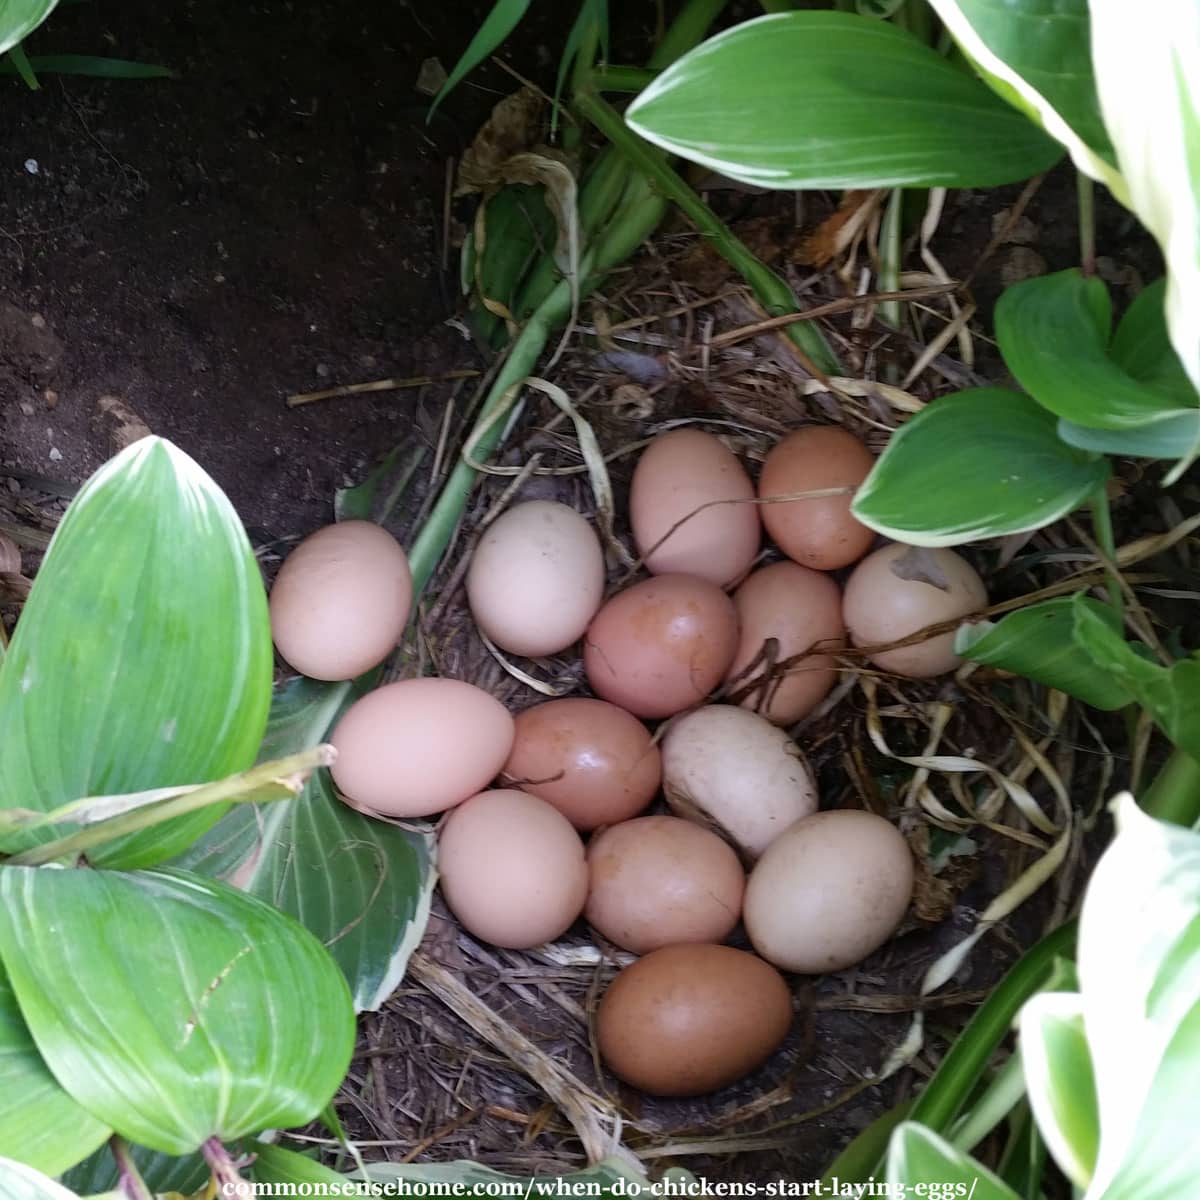 eggs hidden in flower bed